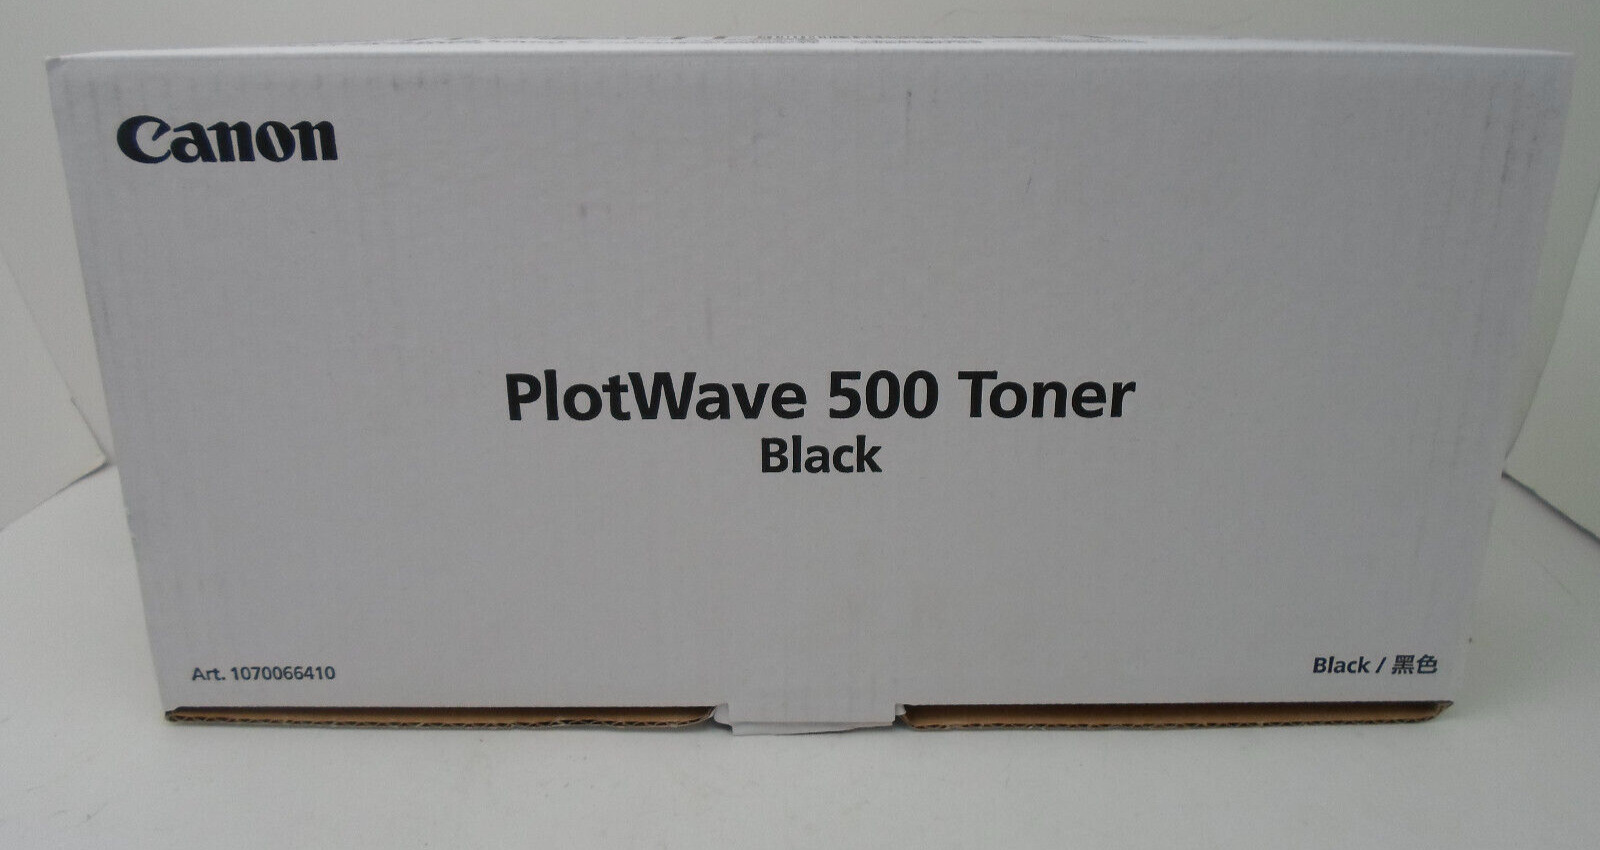 Canon PlotWave 500 Toner 2 Toner Bottles (2 x 450 g) - Black (O19411-1 AO) J1